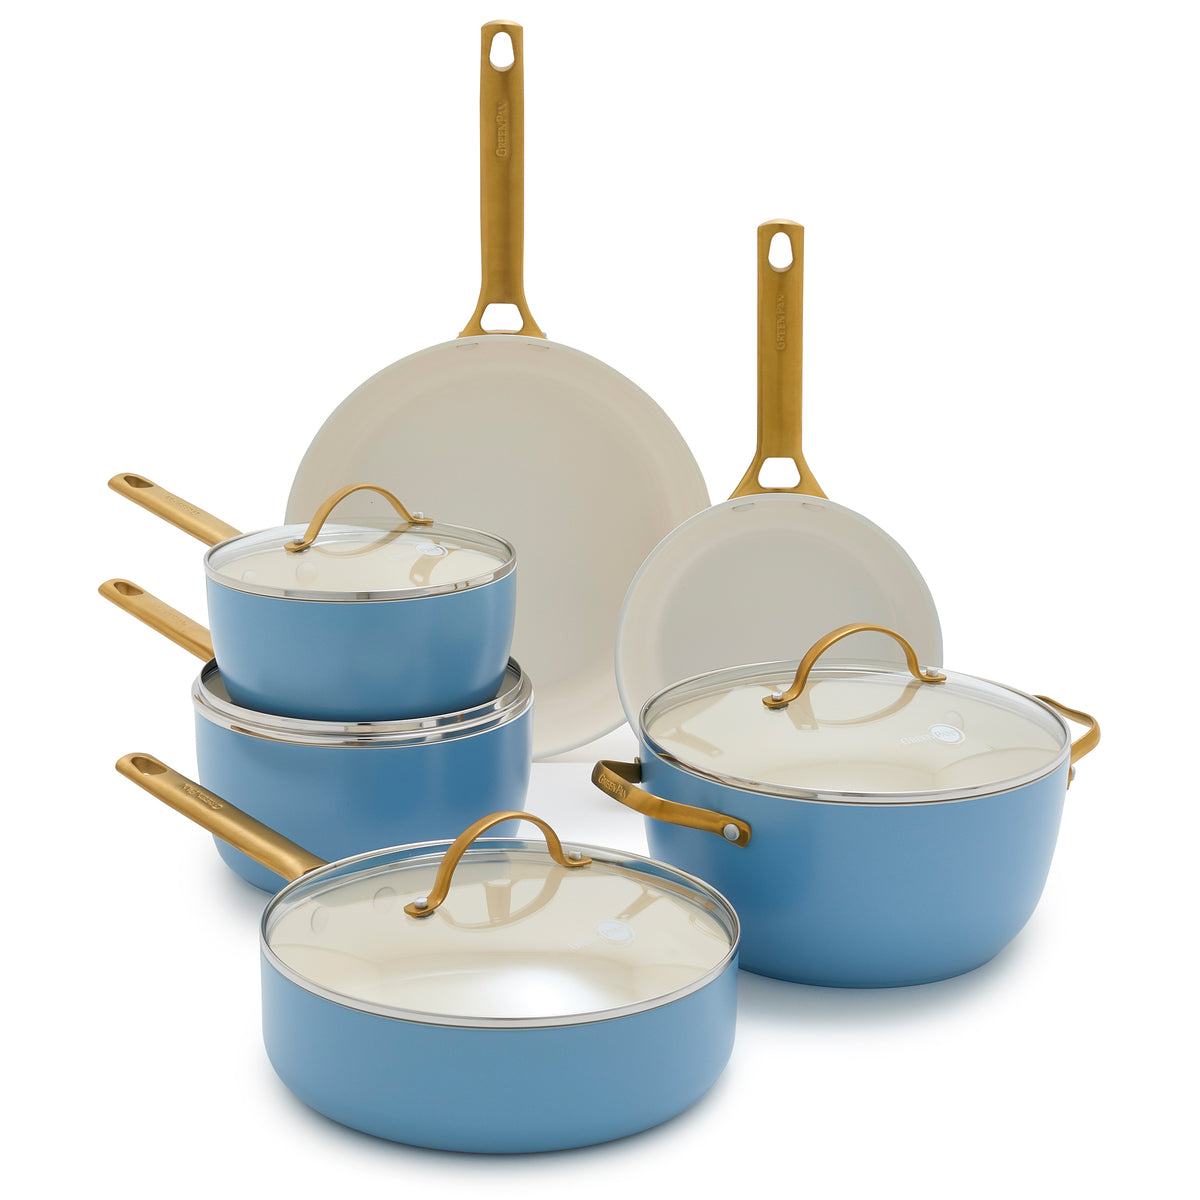 GreenPan Reserve Sky Blue 10-Piece Ceramic Non-Stick Cookware Set + Reviews